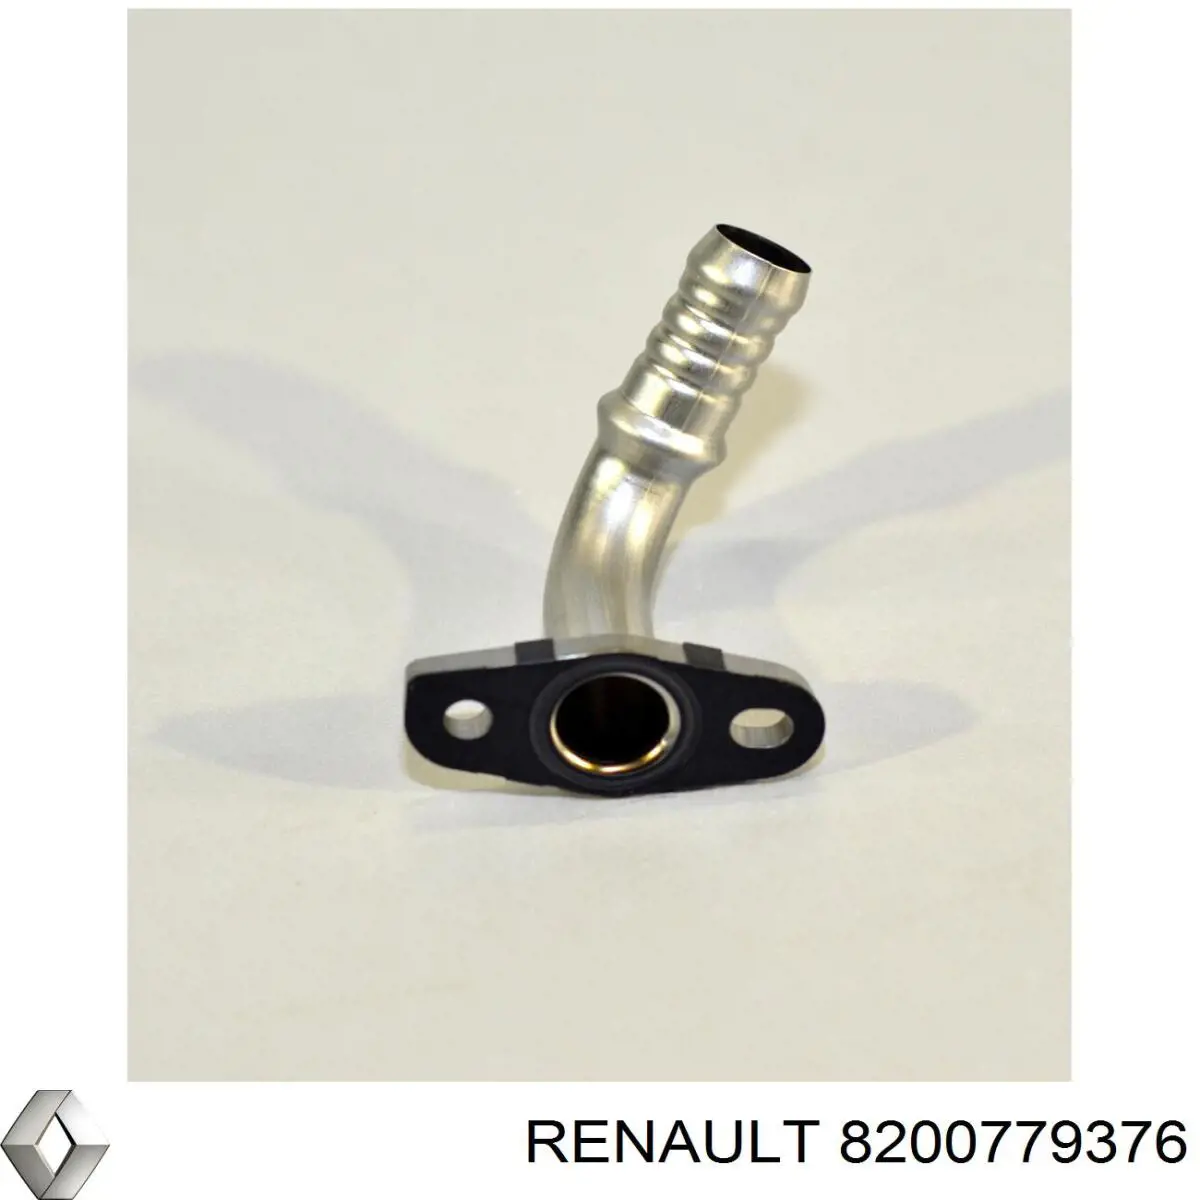 8200779376 Renault (RVI) tubo (manguera Para Drenar El Aceite De Una Turbina)